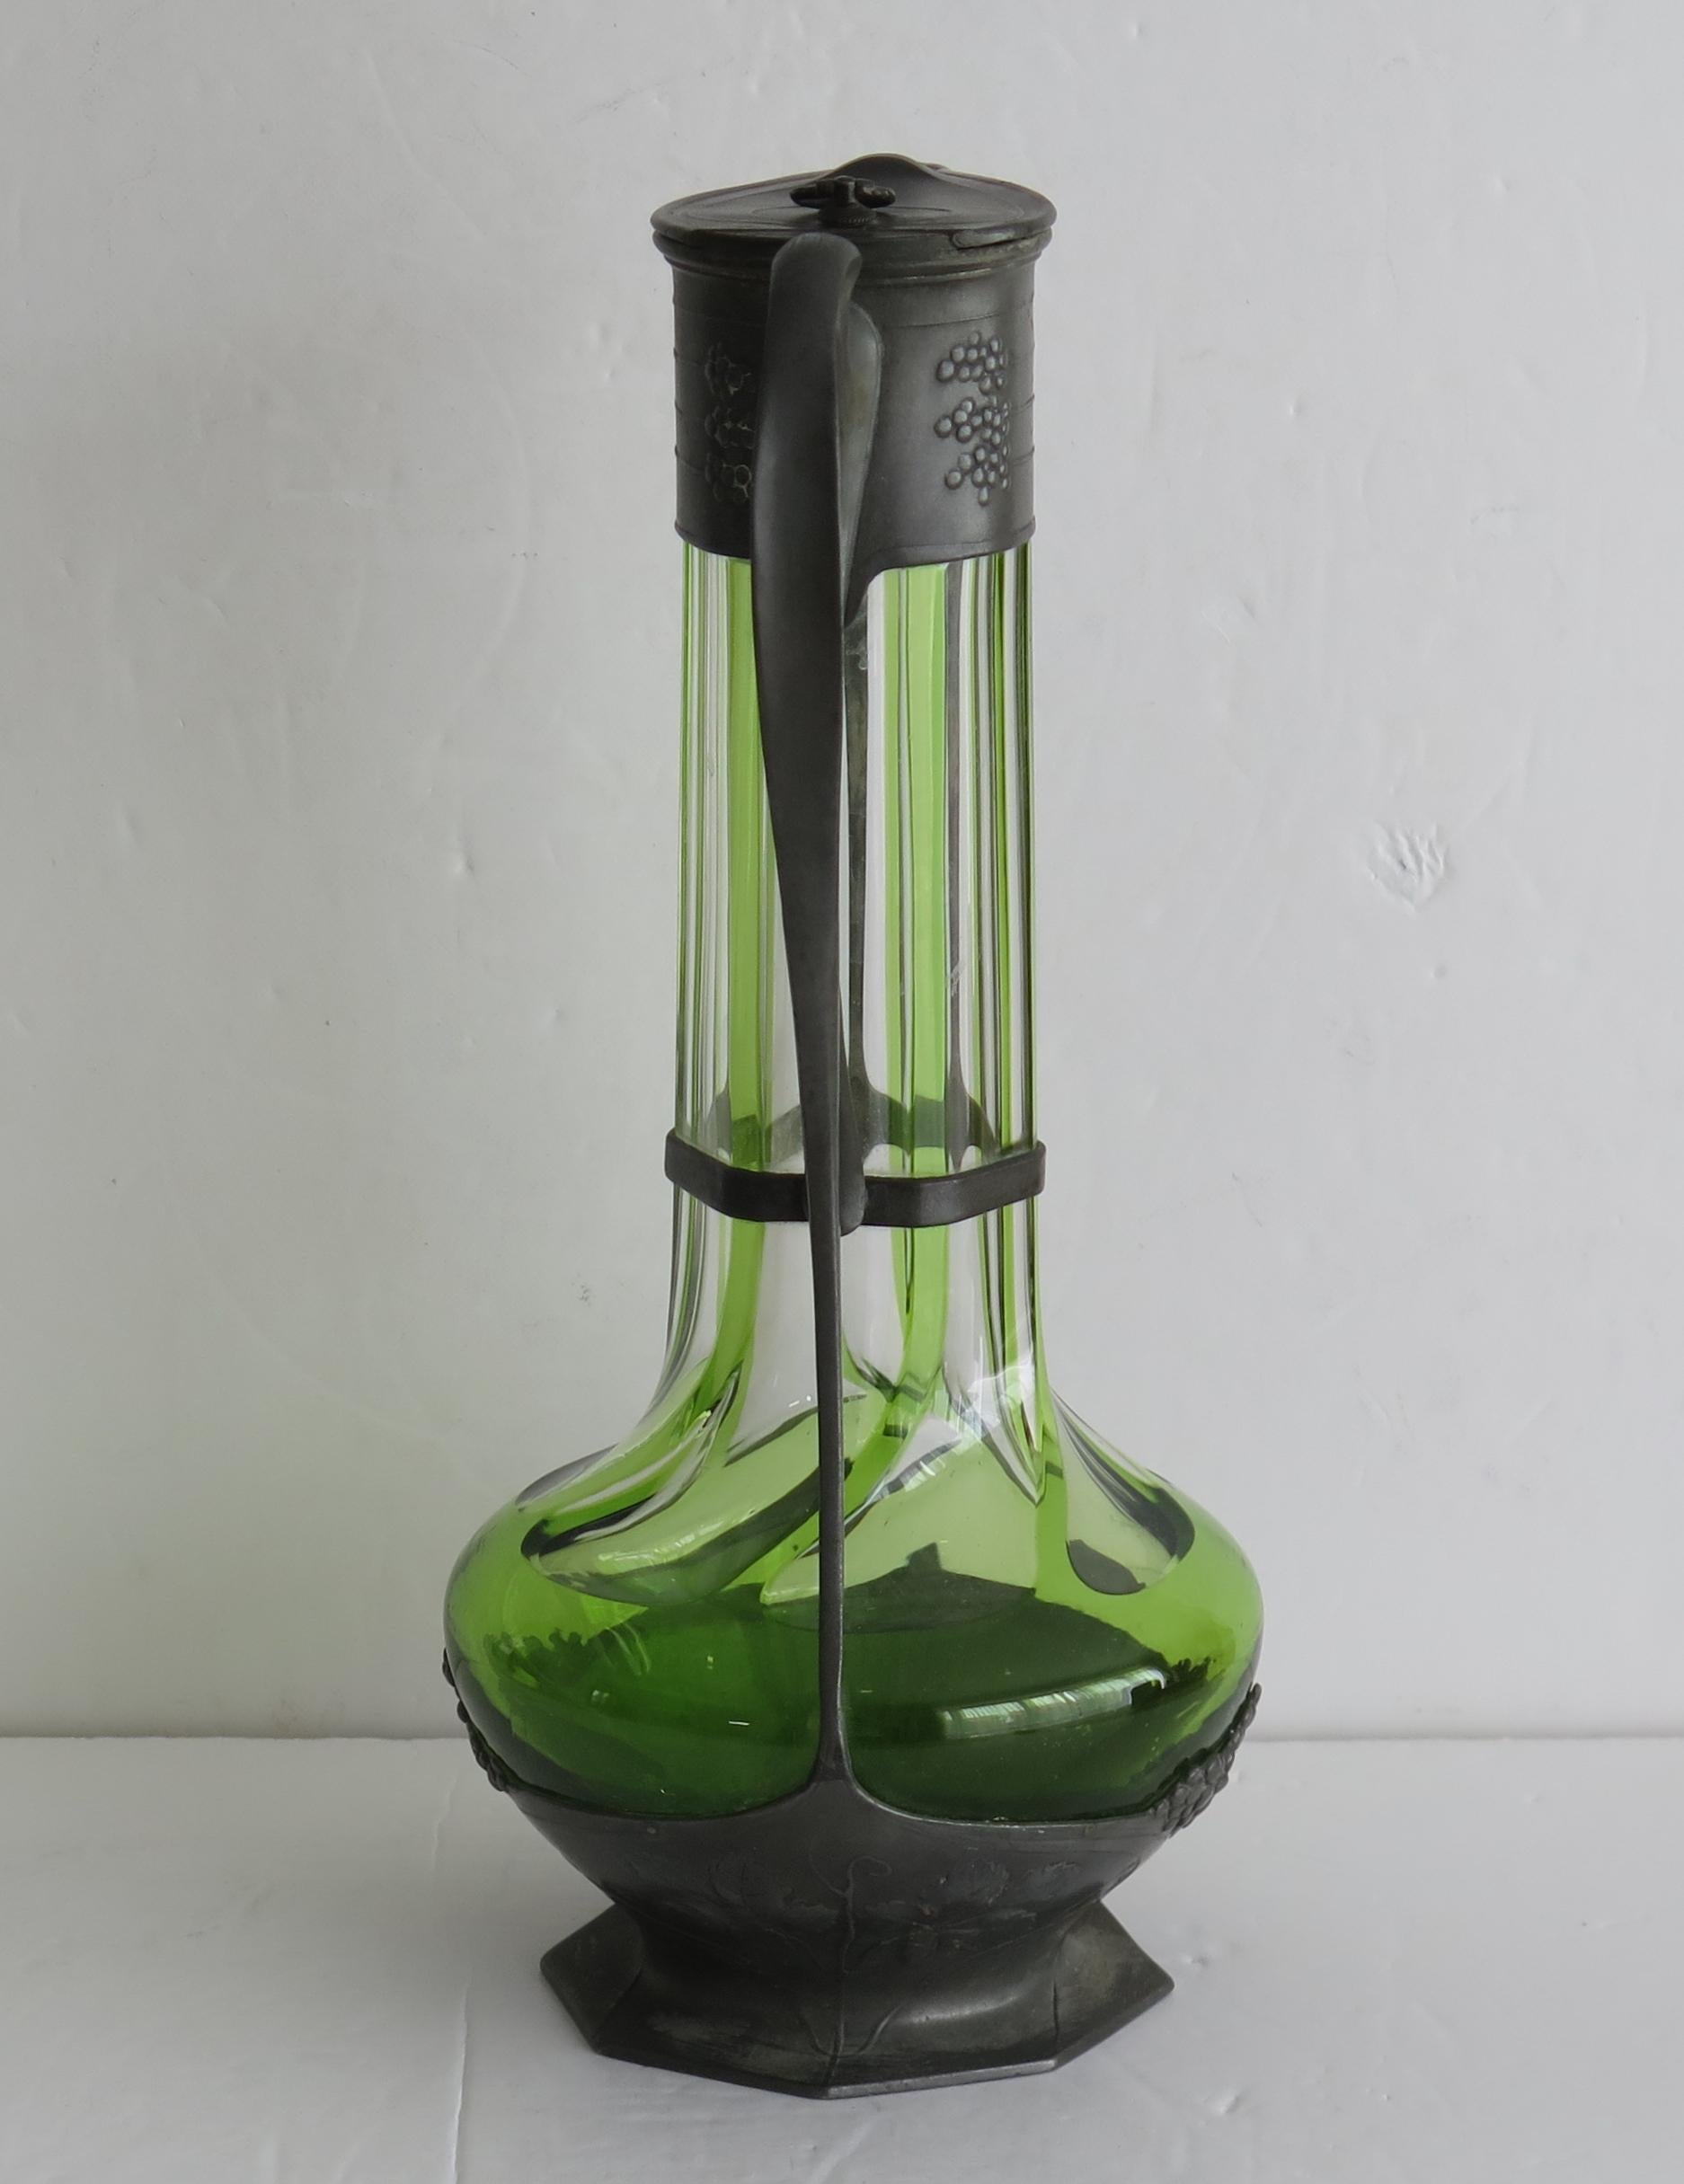 Il s'agit d'une bonne bouteille en verre vert et transparent à nervures verticales, encastrée dans un manchon en étain, le tout dans le style Art Nouveau de l'époque, fabriqué par Orivit, Allemagne, Circa 1900.

Le design et la décoration en étain